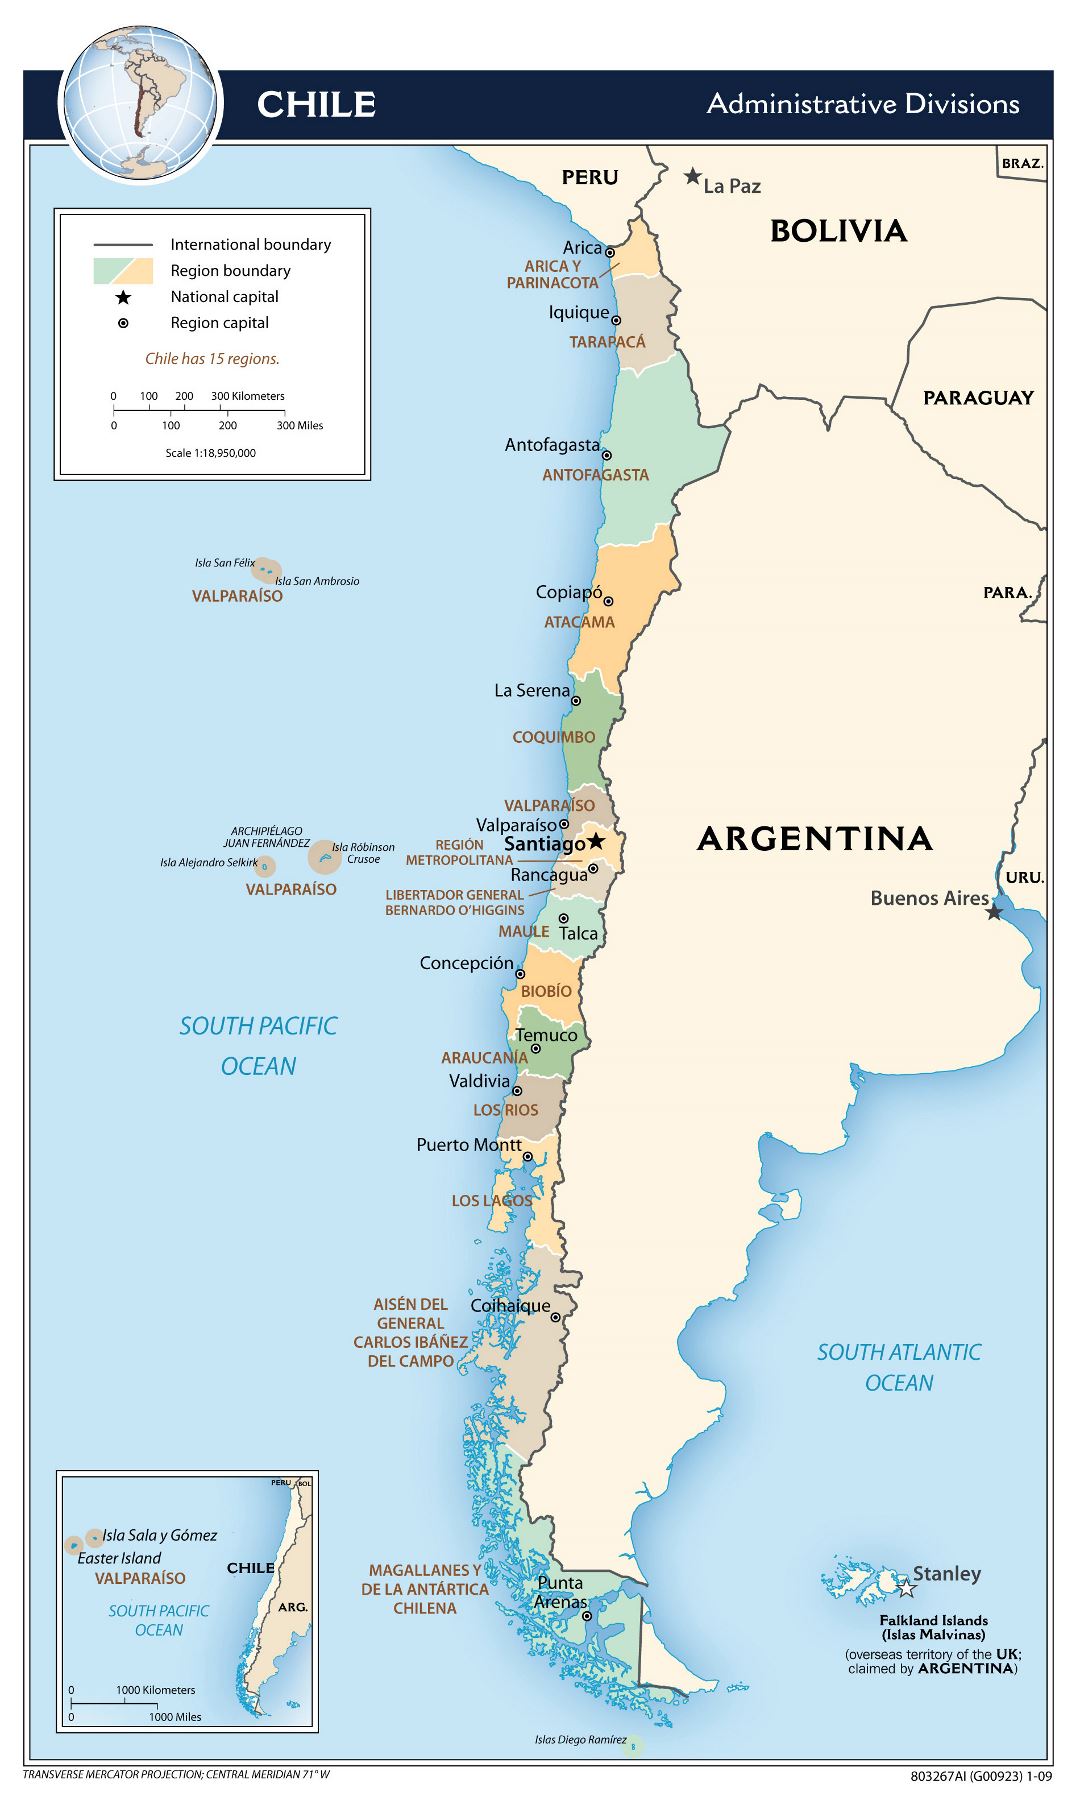 Большая детальная карта административных делений Чили - 2009